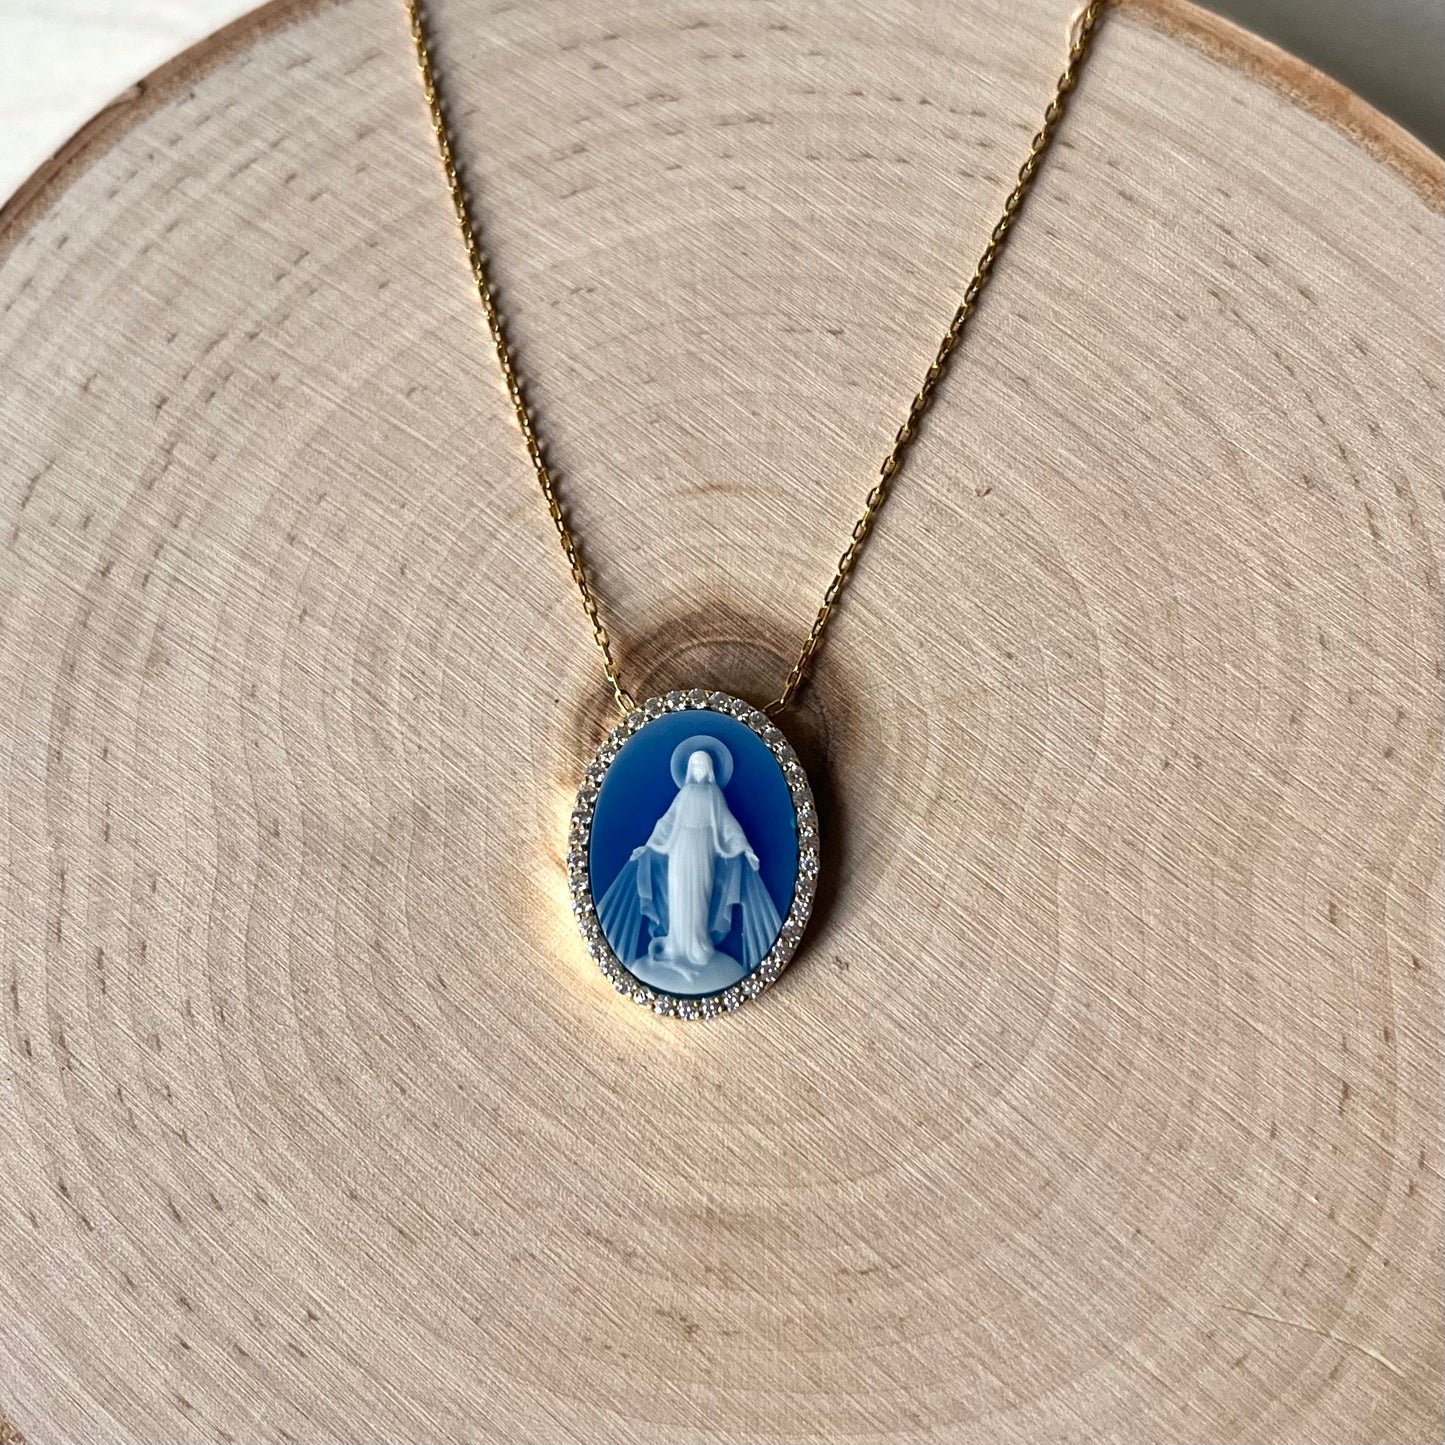 'Bernadette' Our Lady of Lourdes Blue Pendant Necklace